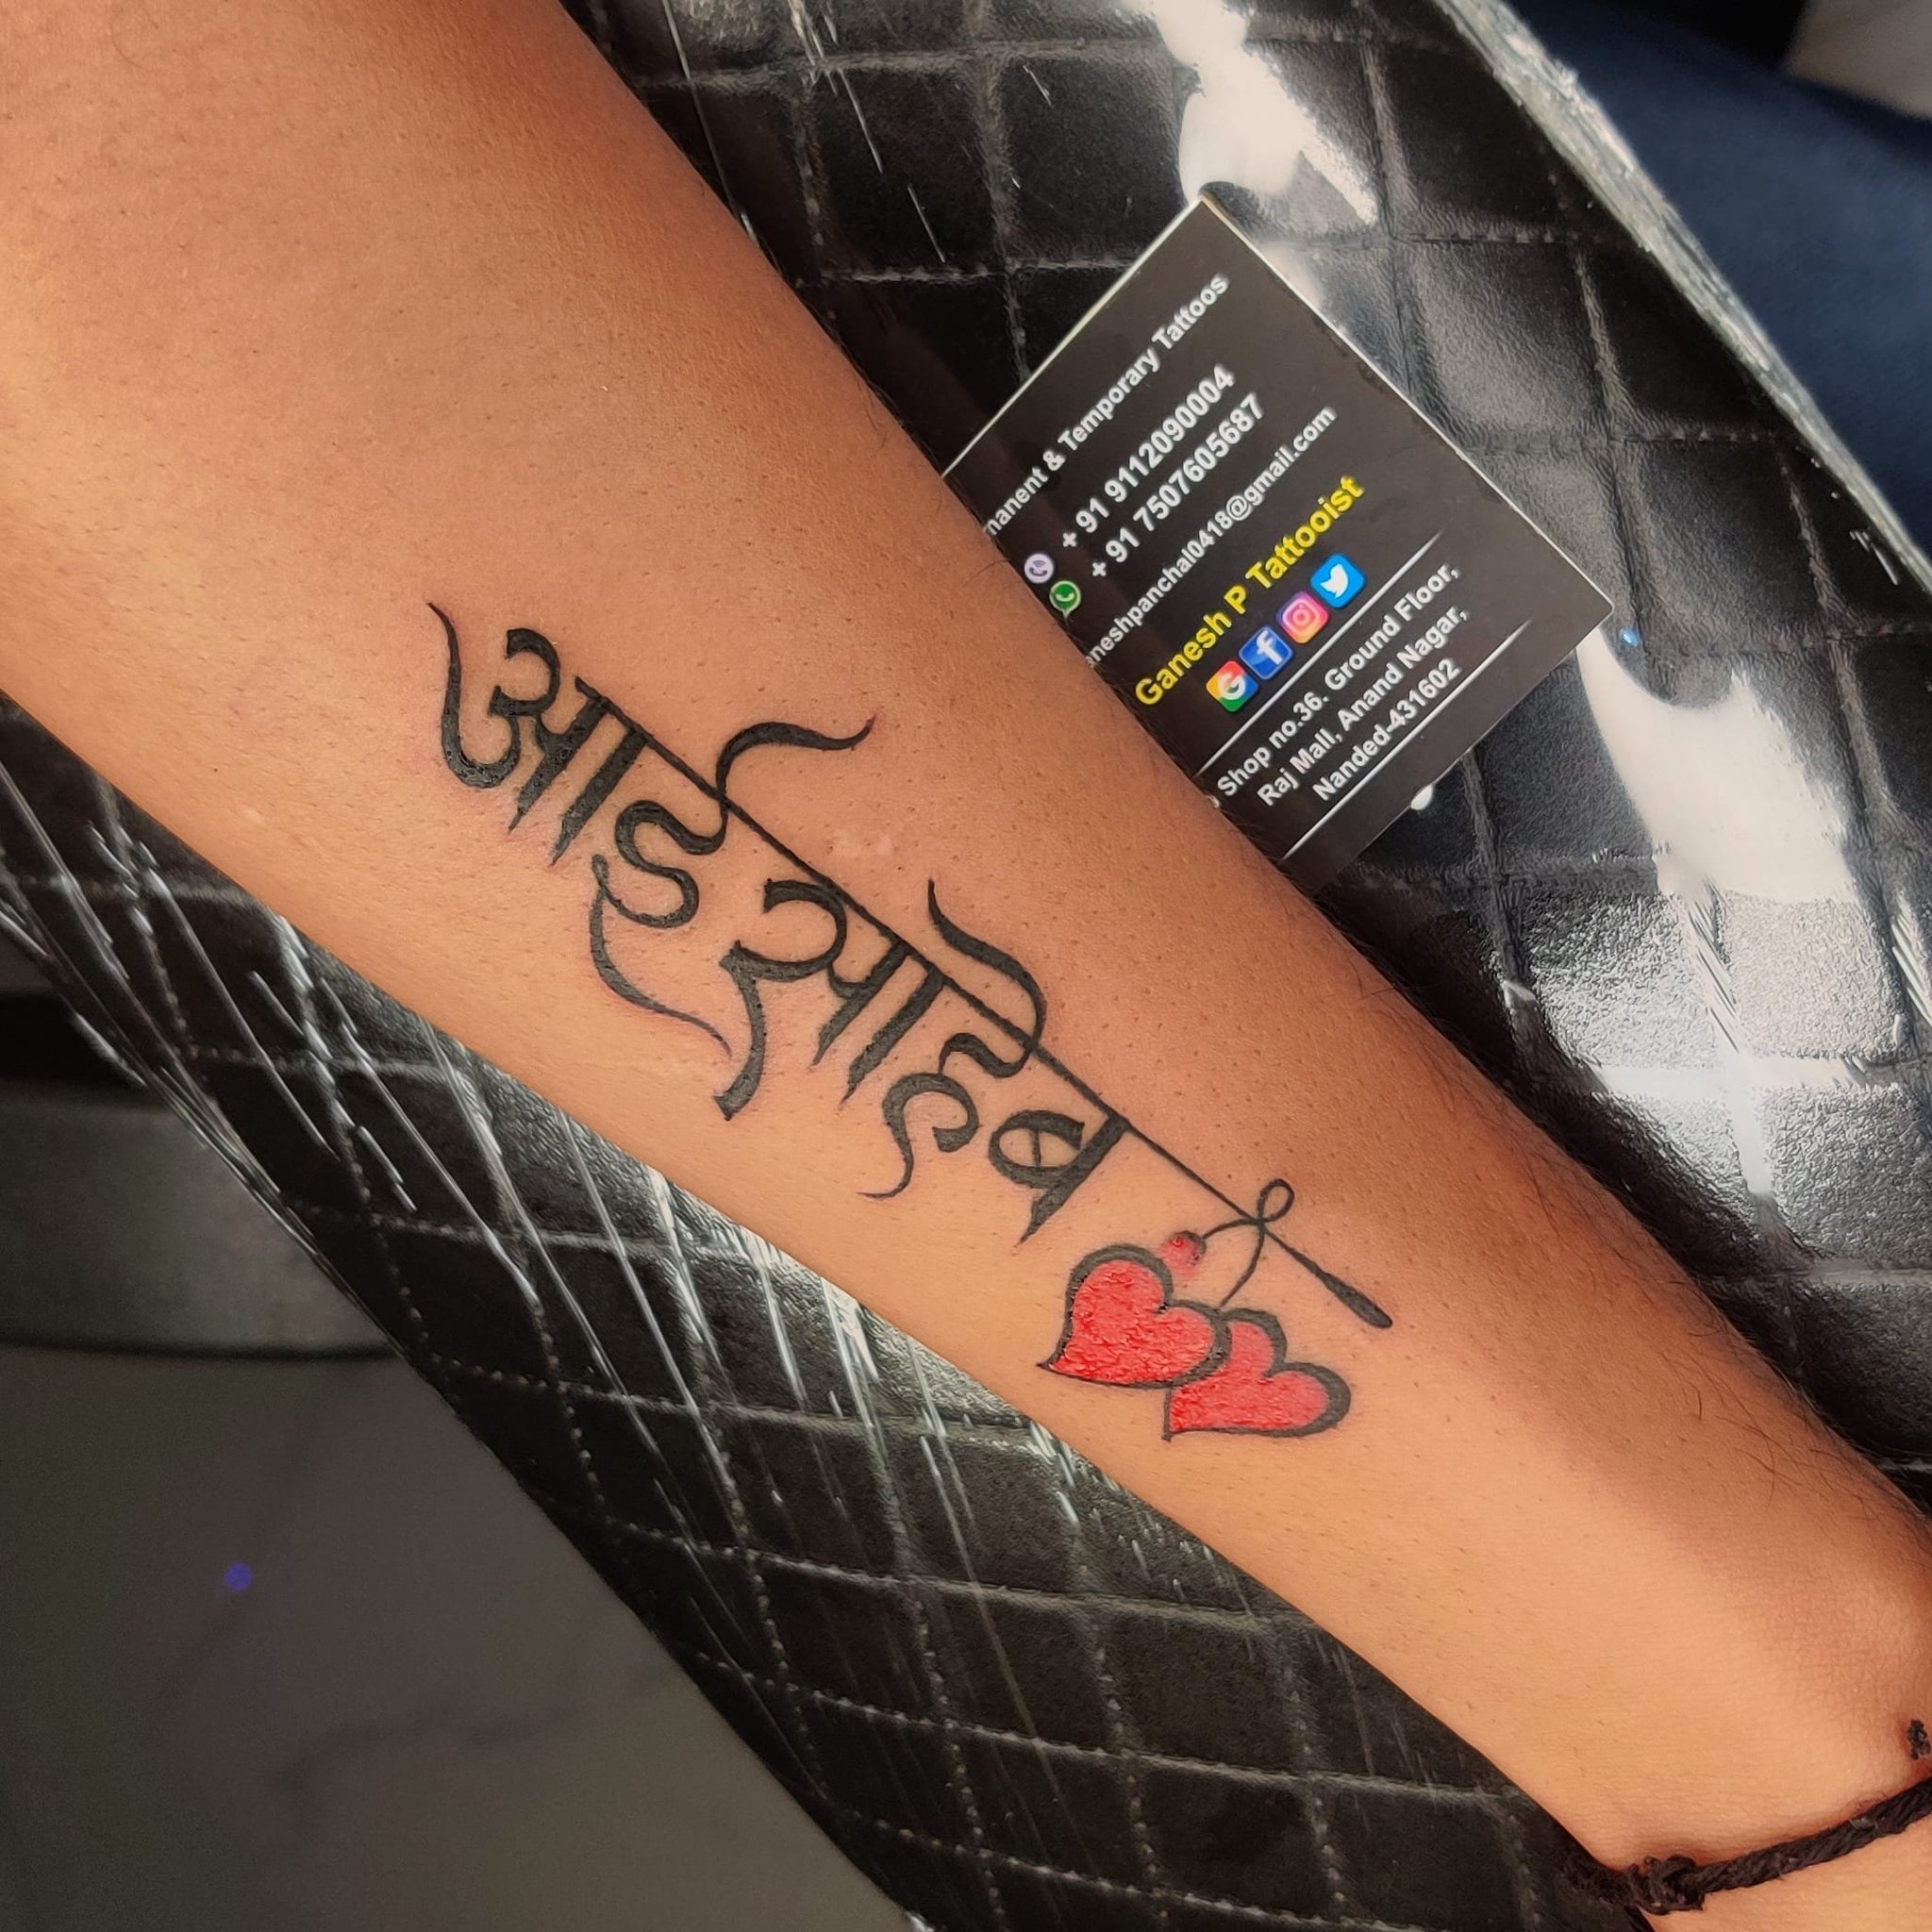 Ganesh Rao on Instagram Name tattoo trending